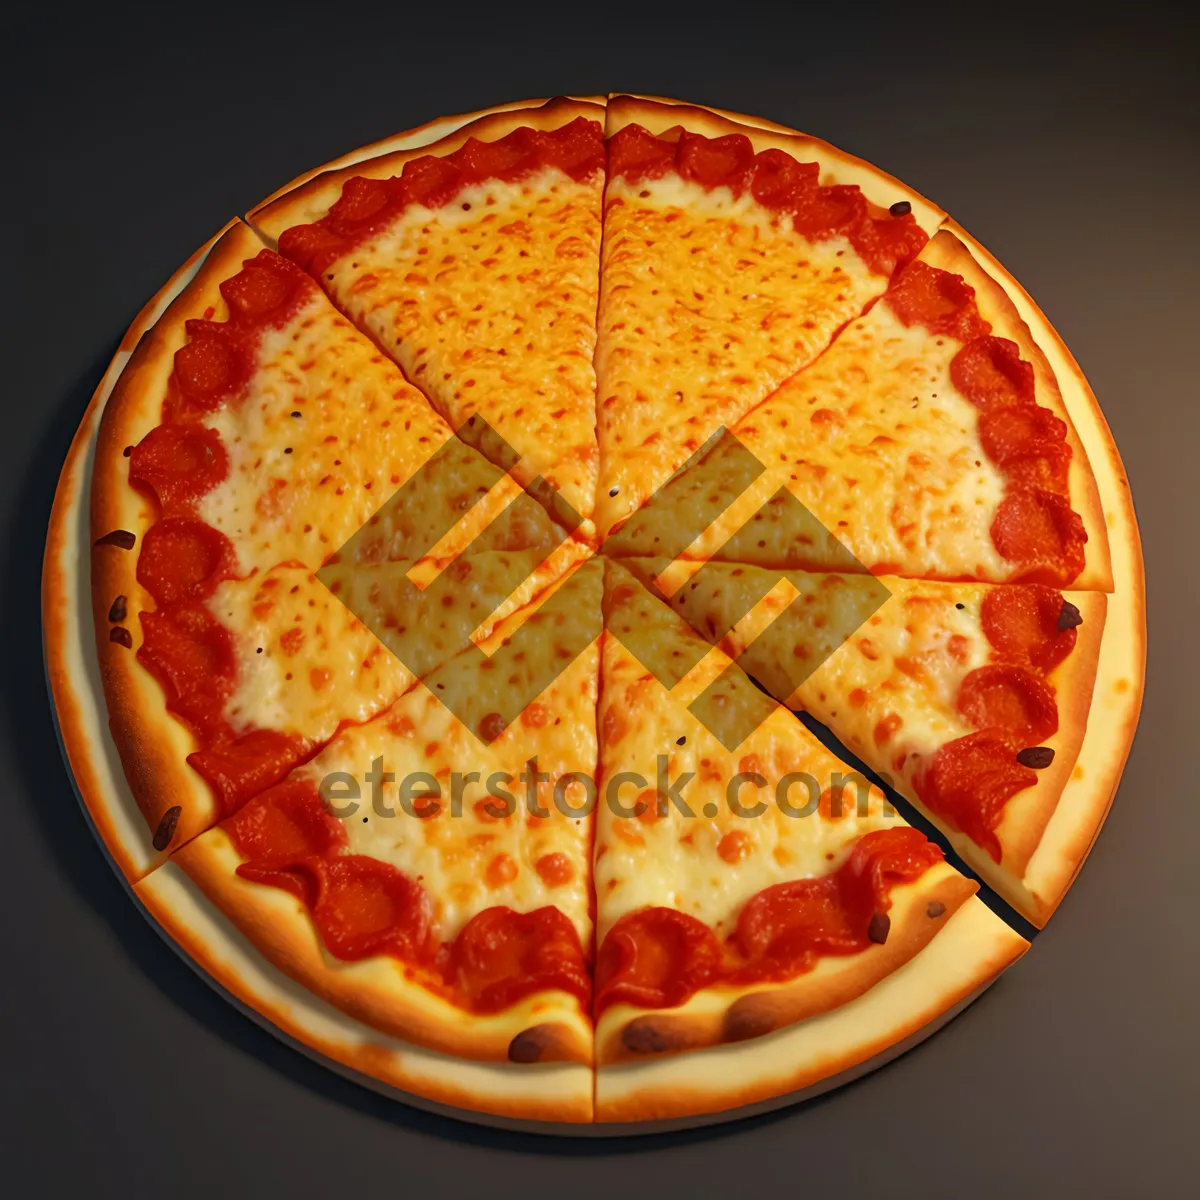 Picture of Delicious Pepperoni Pizza with Mozzarella and Tomato Sauce